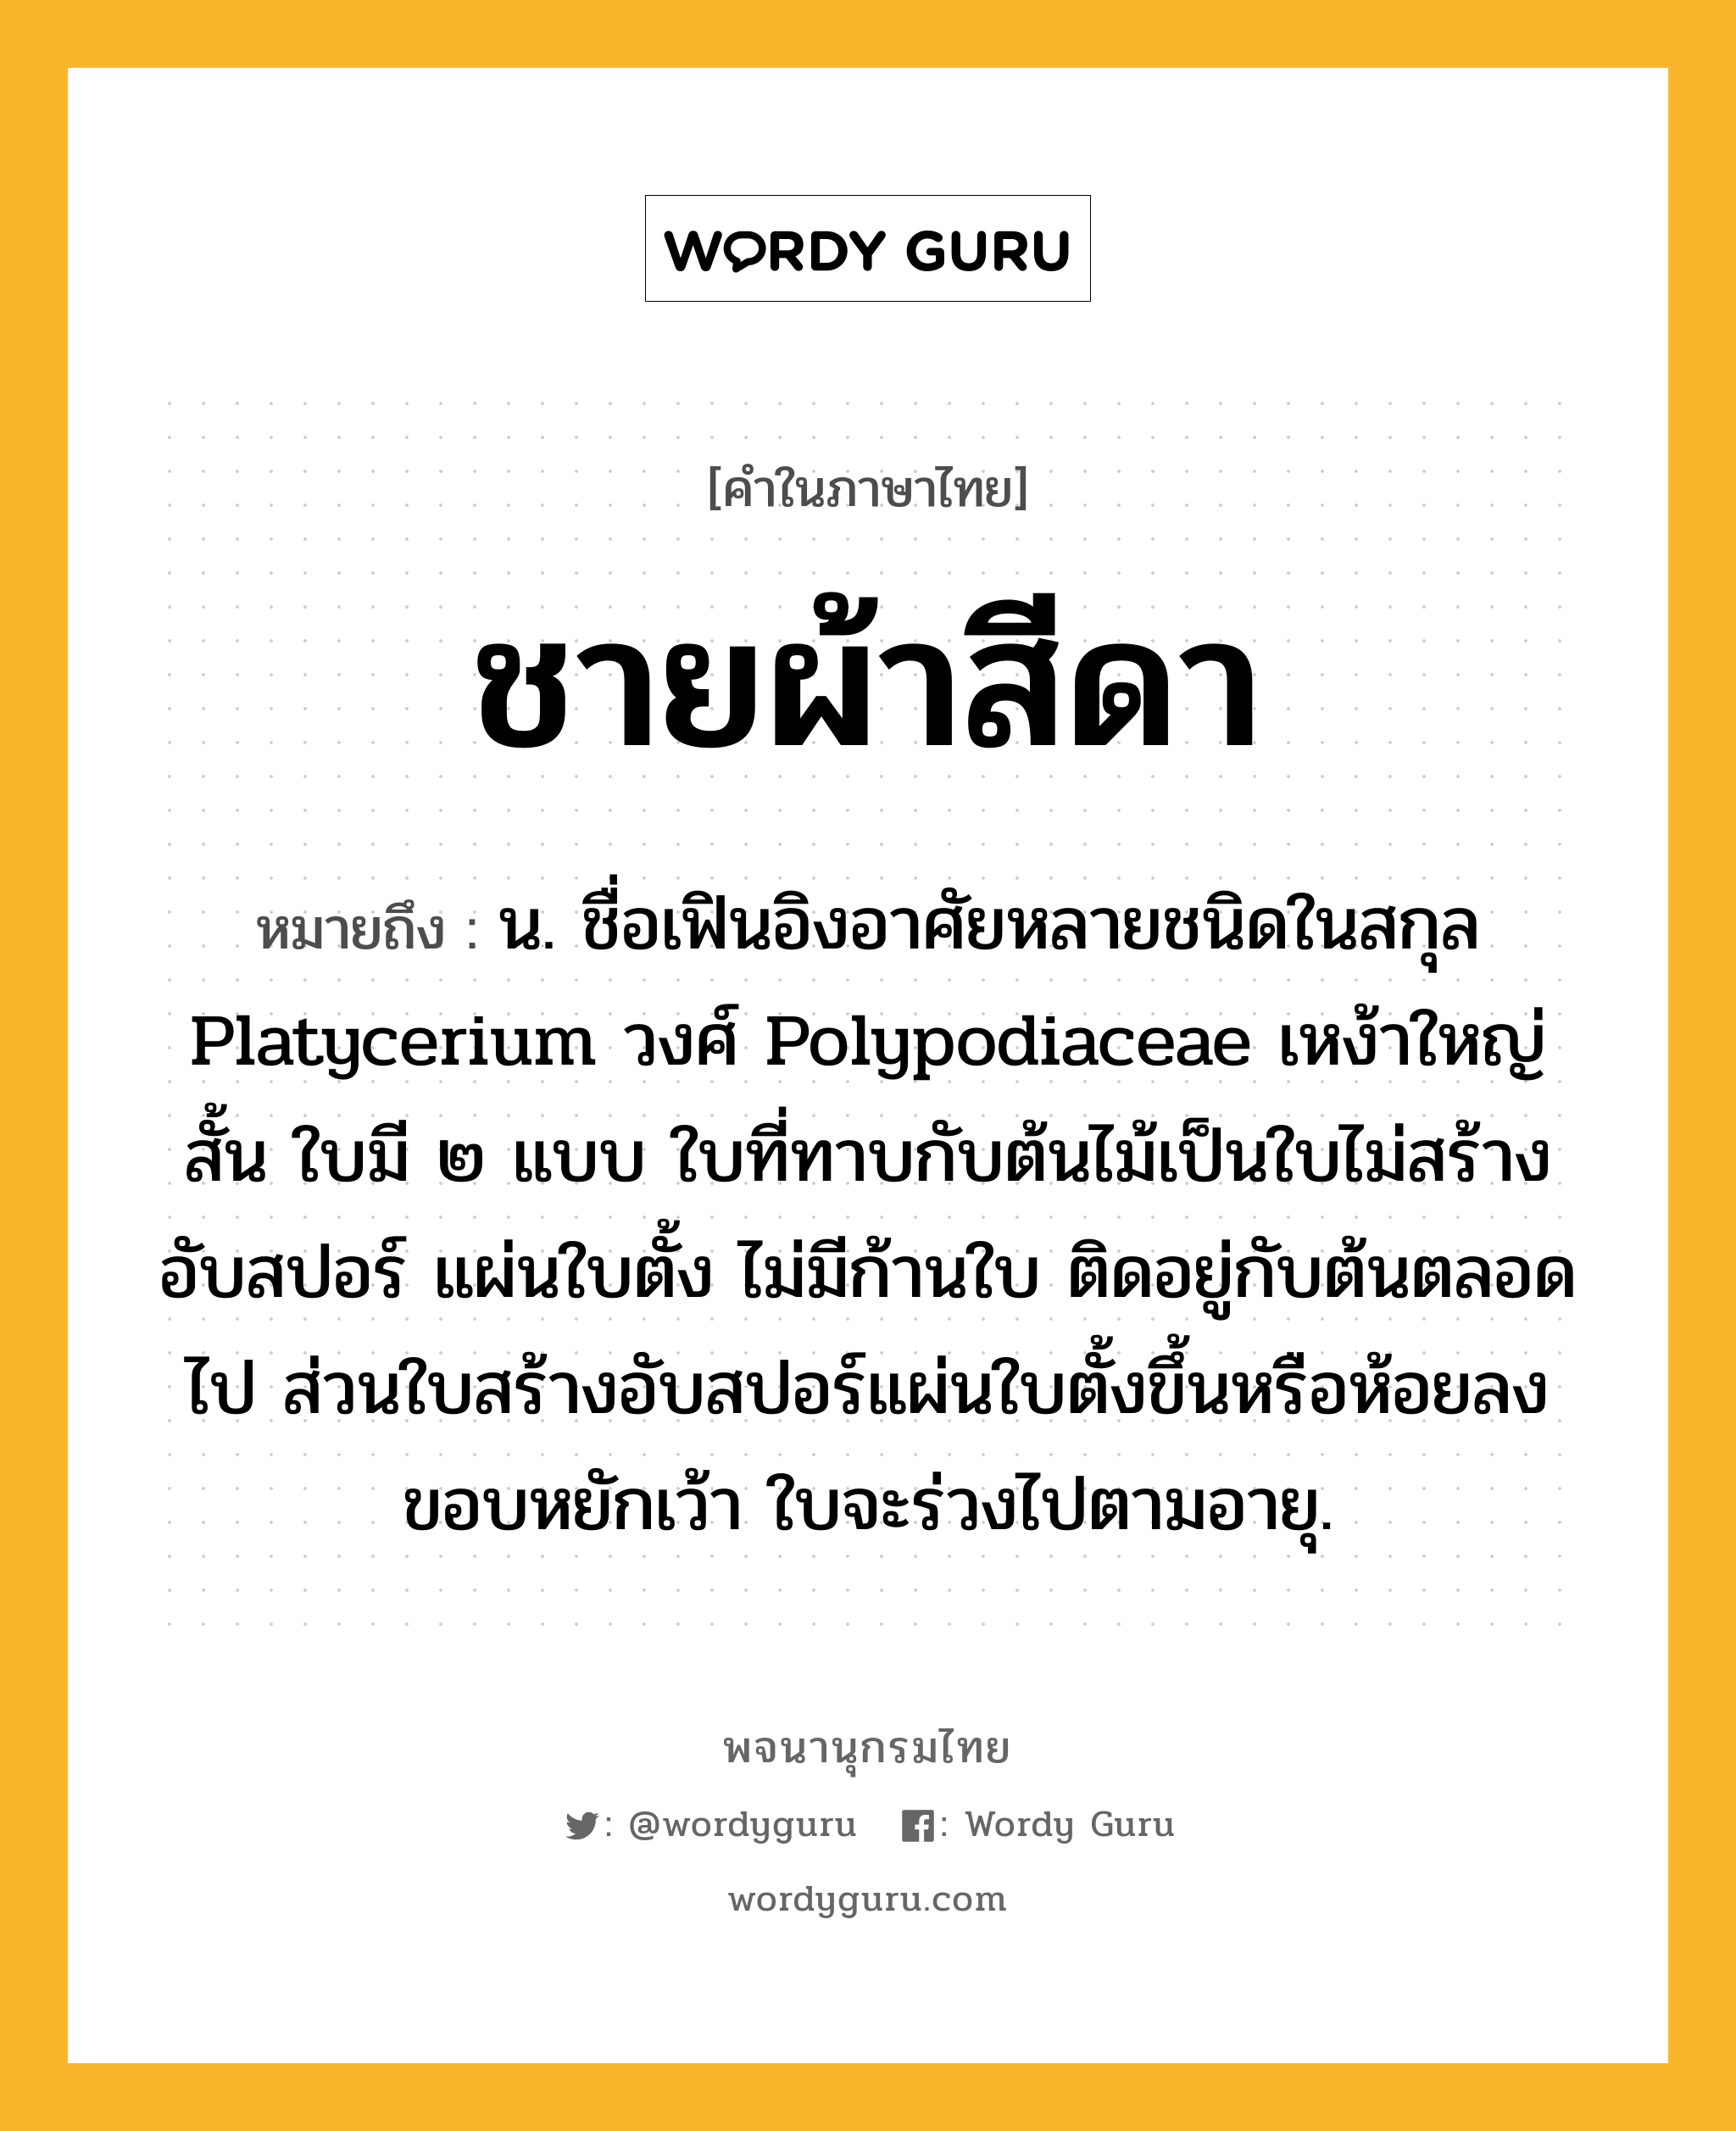 ชายผ้าสีดา ความหมาย หมายถึงอะไร?, คำในภาษาไทย ชายผ้าสีดา หมายถึง น. ชื่อเฟินอิงอาศัยหลายชนิดในสกุล Platycerium วงศ์ Polypodiaceae เหง้าใหญ่สั้น ใบมี ๒ แบบ ใบที่ทาบกับต้นไม้เป็นใบไม่สร้างอับสปอร์ แผ่นใบตั้ง ไม่มีก้านใบ ติดอยู่กับต้นตลอดไป ส่วนใบสร้างอับสปอร์แผ่นใบตั้งขึ้นหรือห้อยลง ขอบหยักเว้า ใบจะร่วงไปตามอายุ.